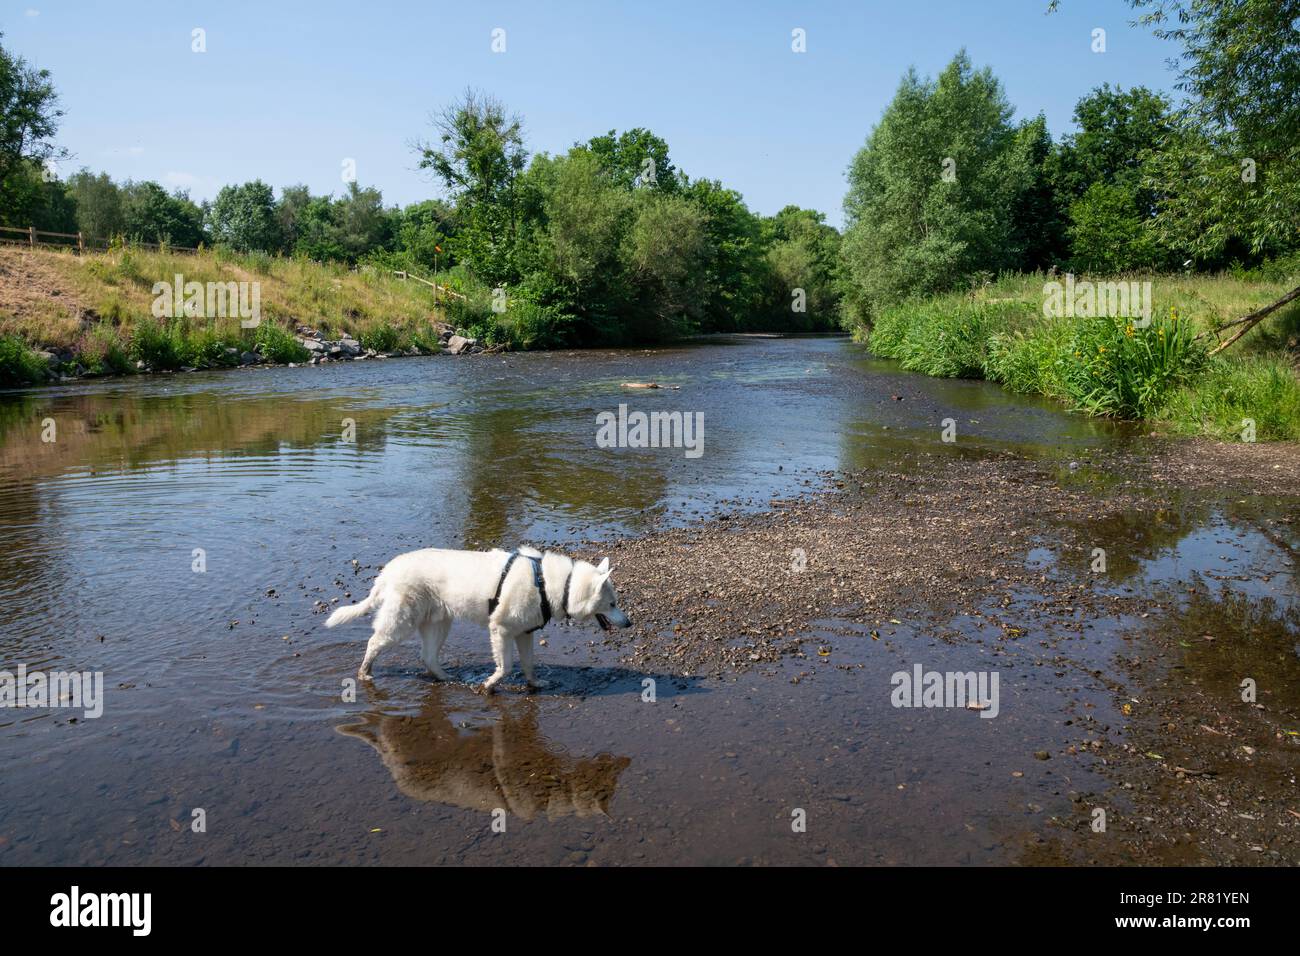 Husky sibérien blanc pagayant dans la rivière Tame au parc régional Reddish Vale, Stockport, Greater Manchester, Angleterre. Banque D'Images